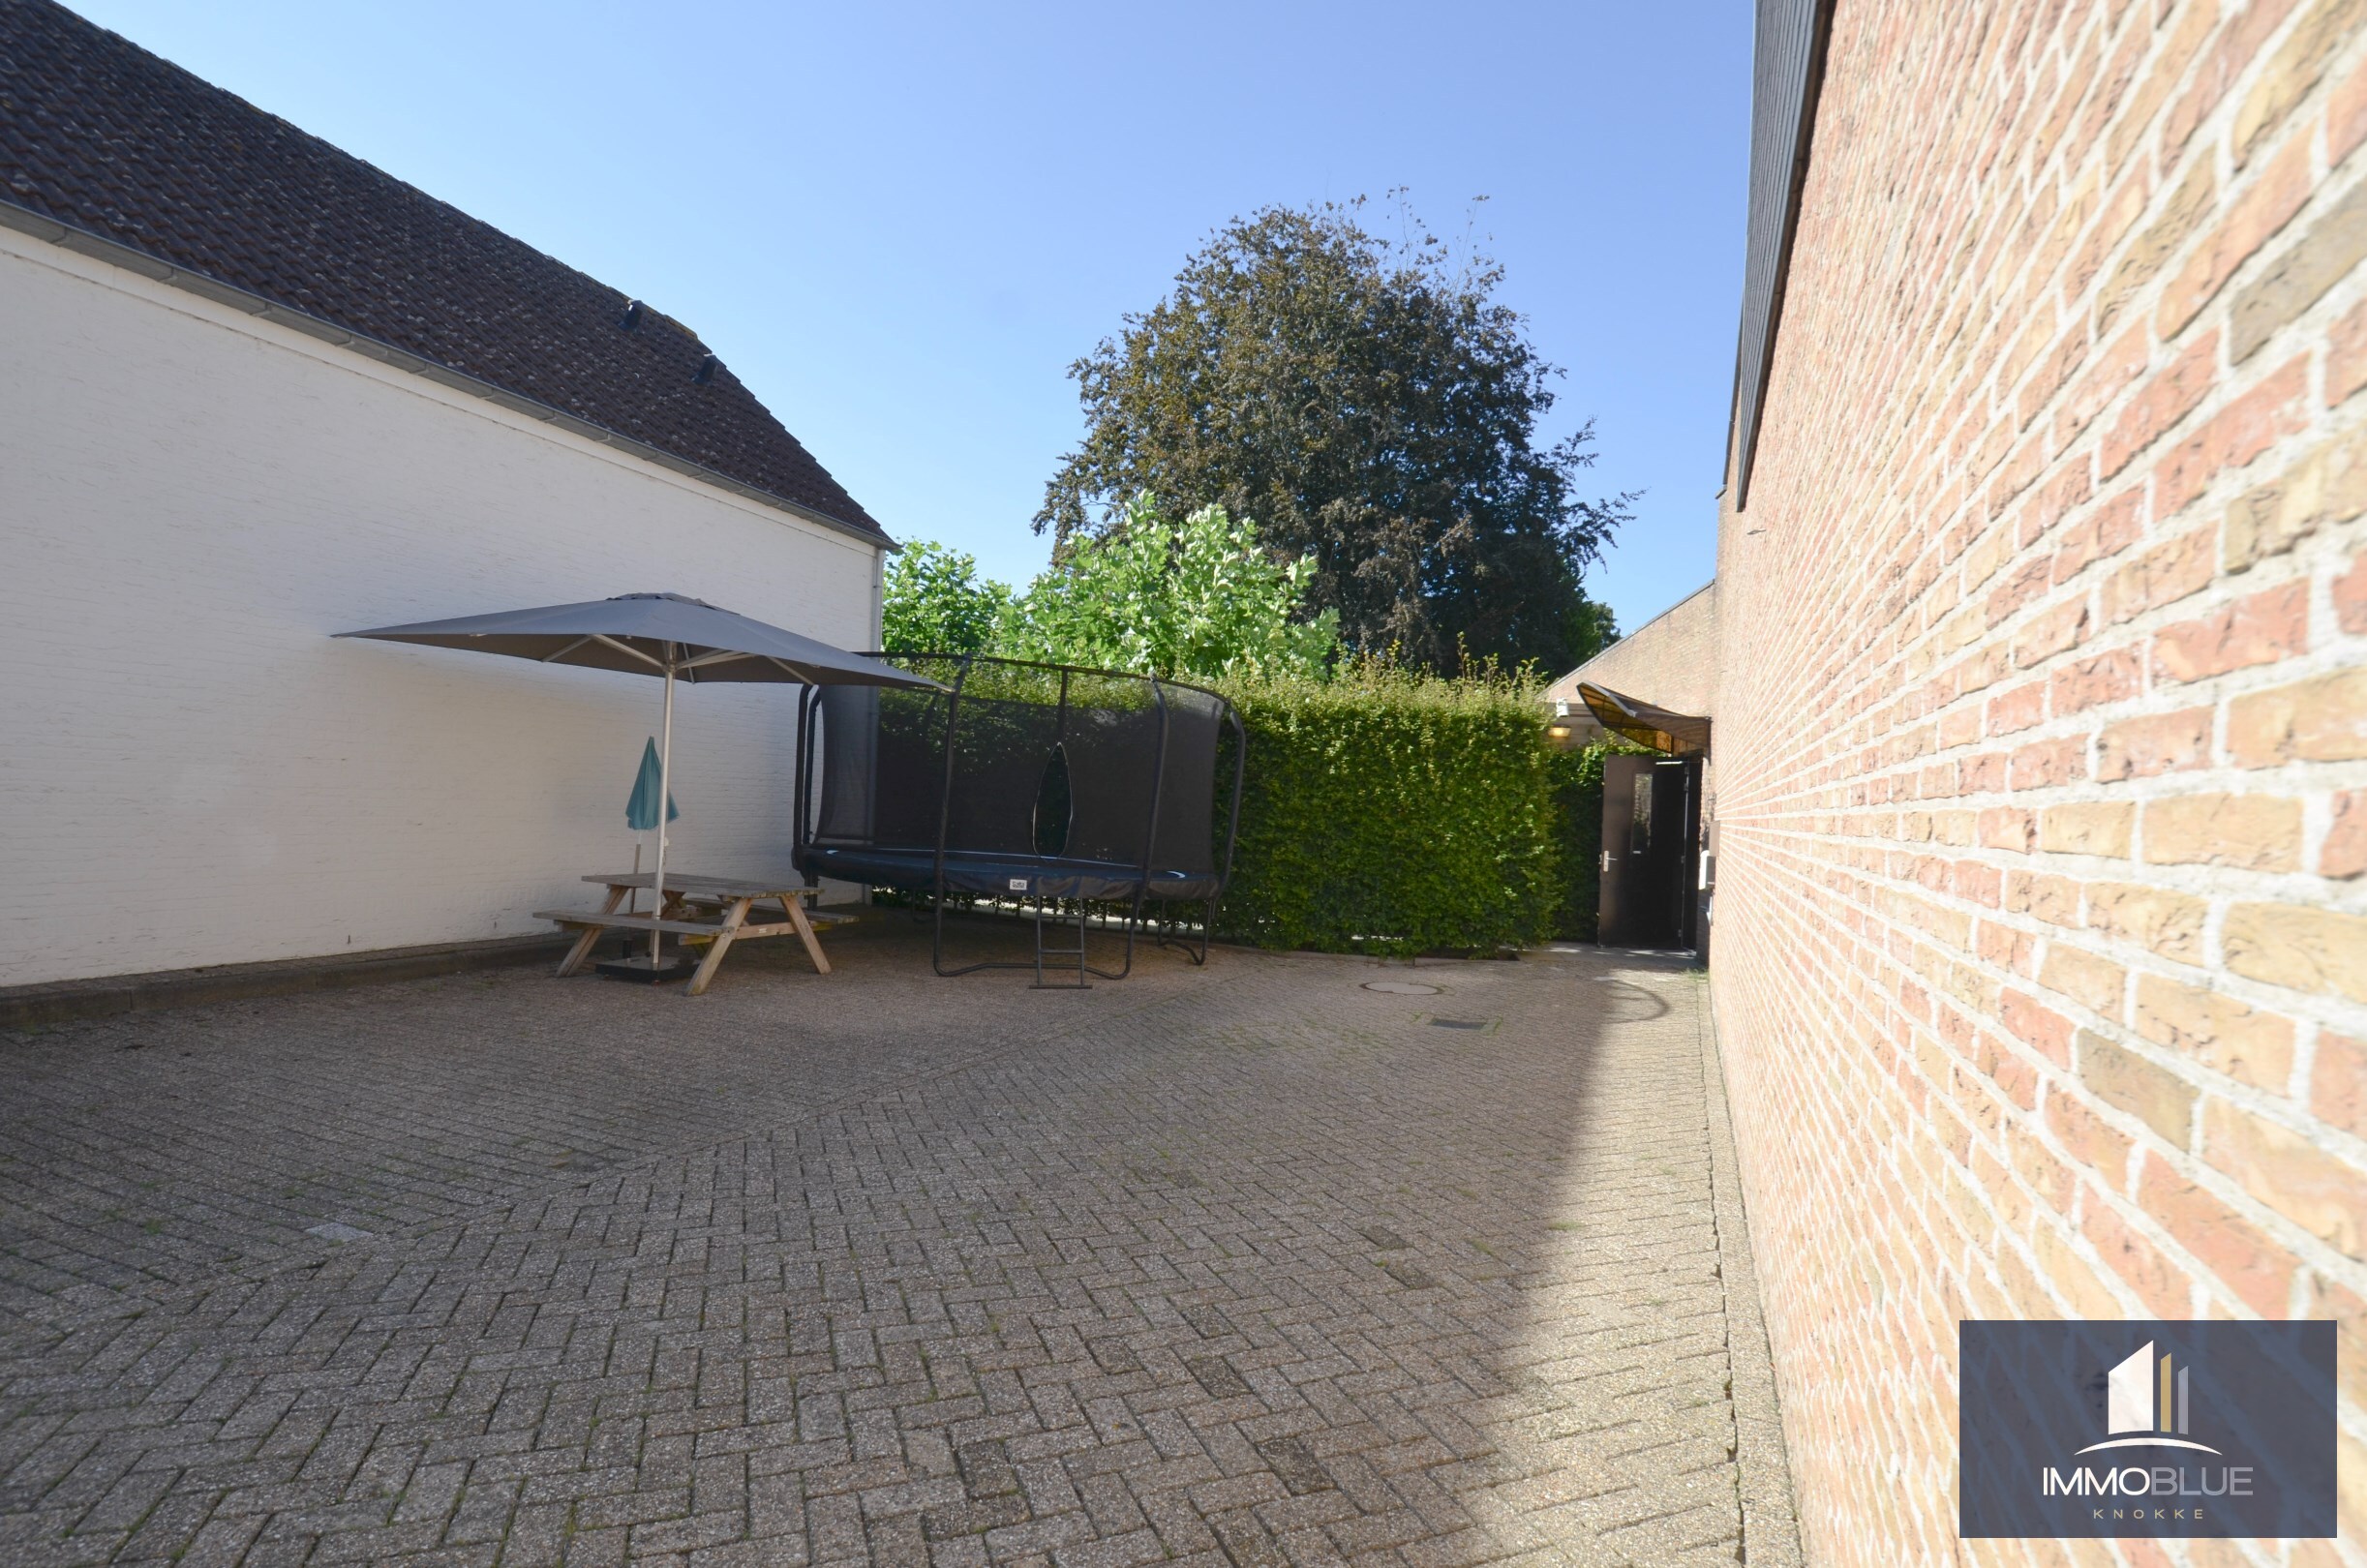 Uniek eigendom: Prachtige woning/handelszaak gelegen op een absolute toplocatie in het centrum van Sluis aan de Damse Vaart. 